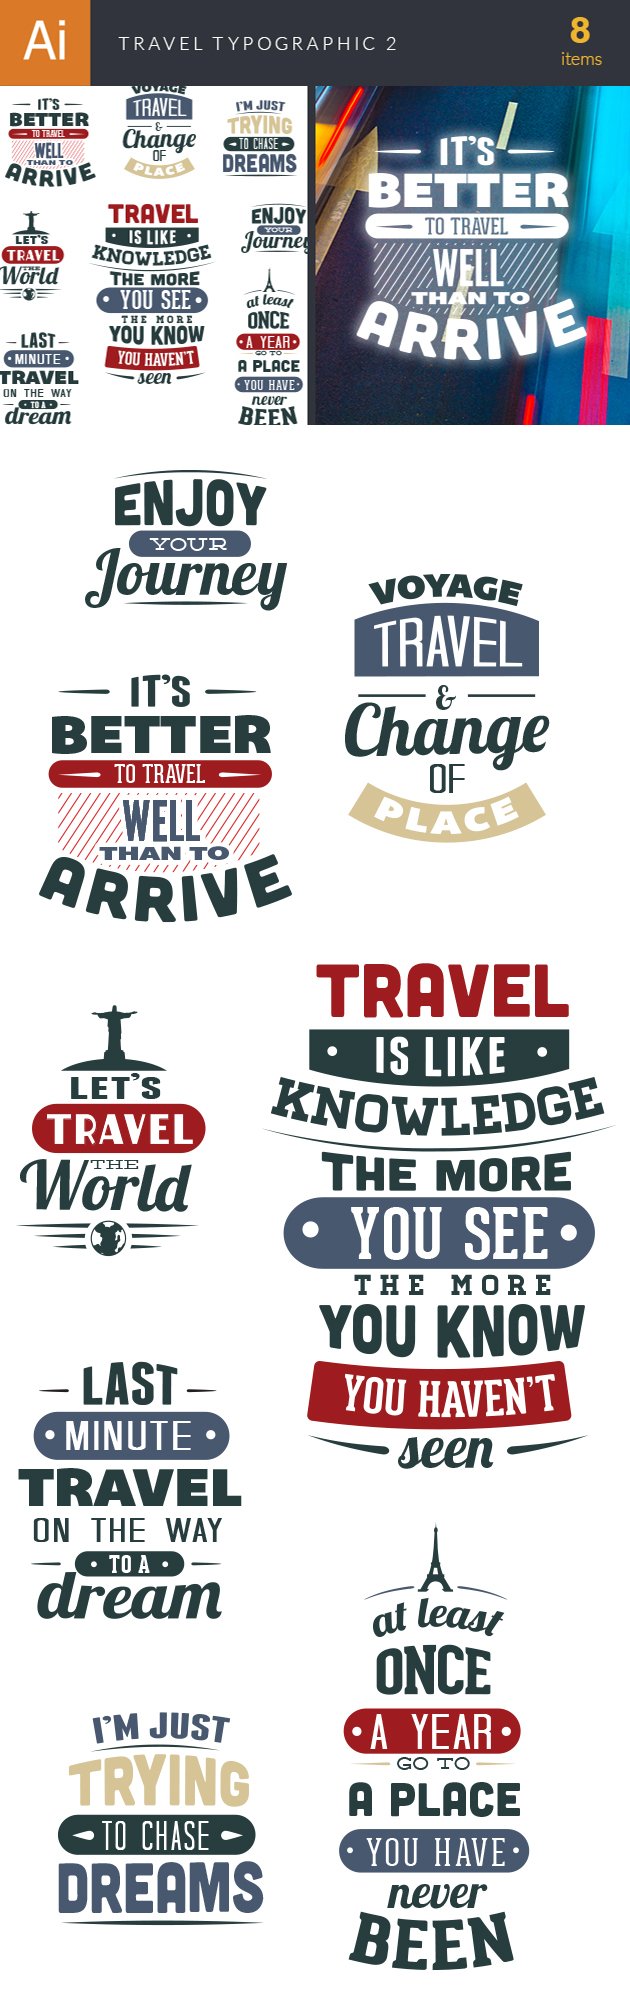 Travel Typographic Elements 2 2